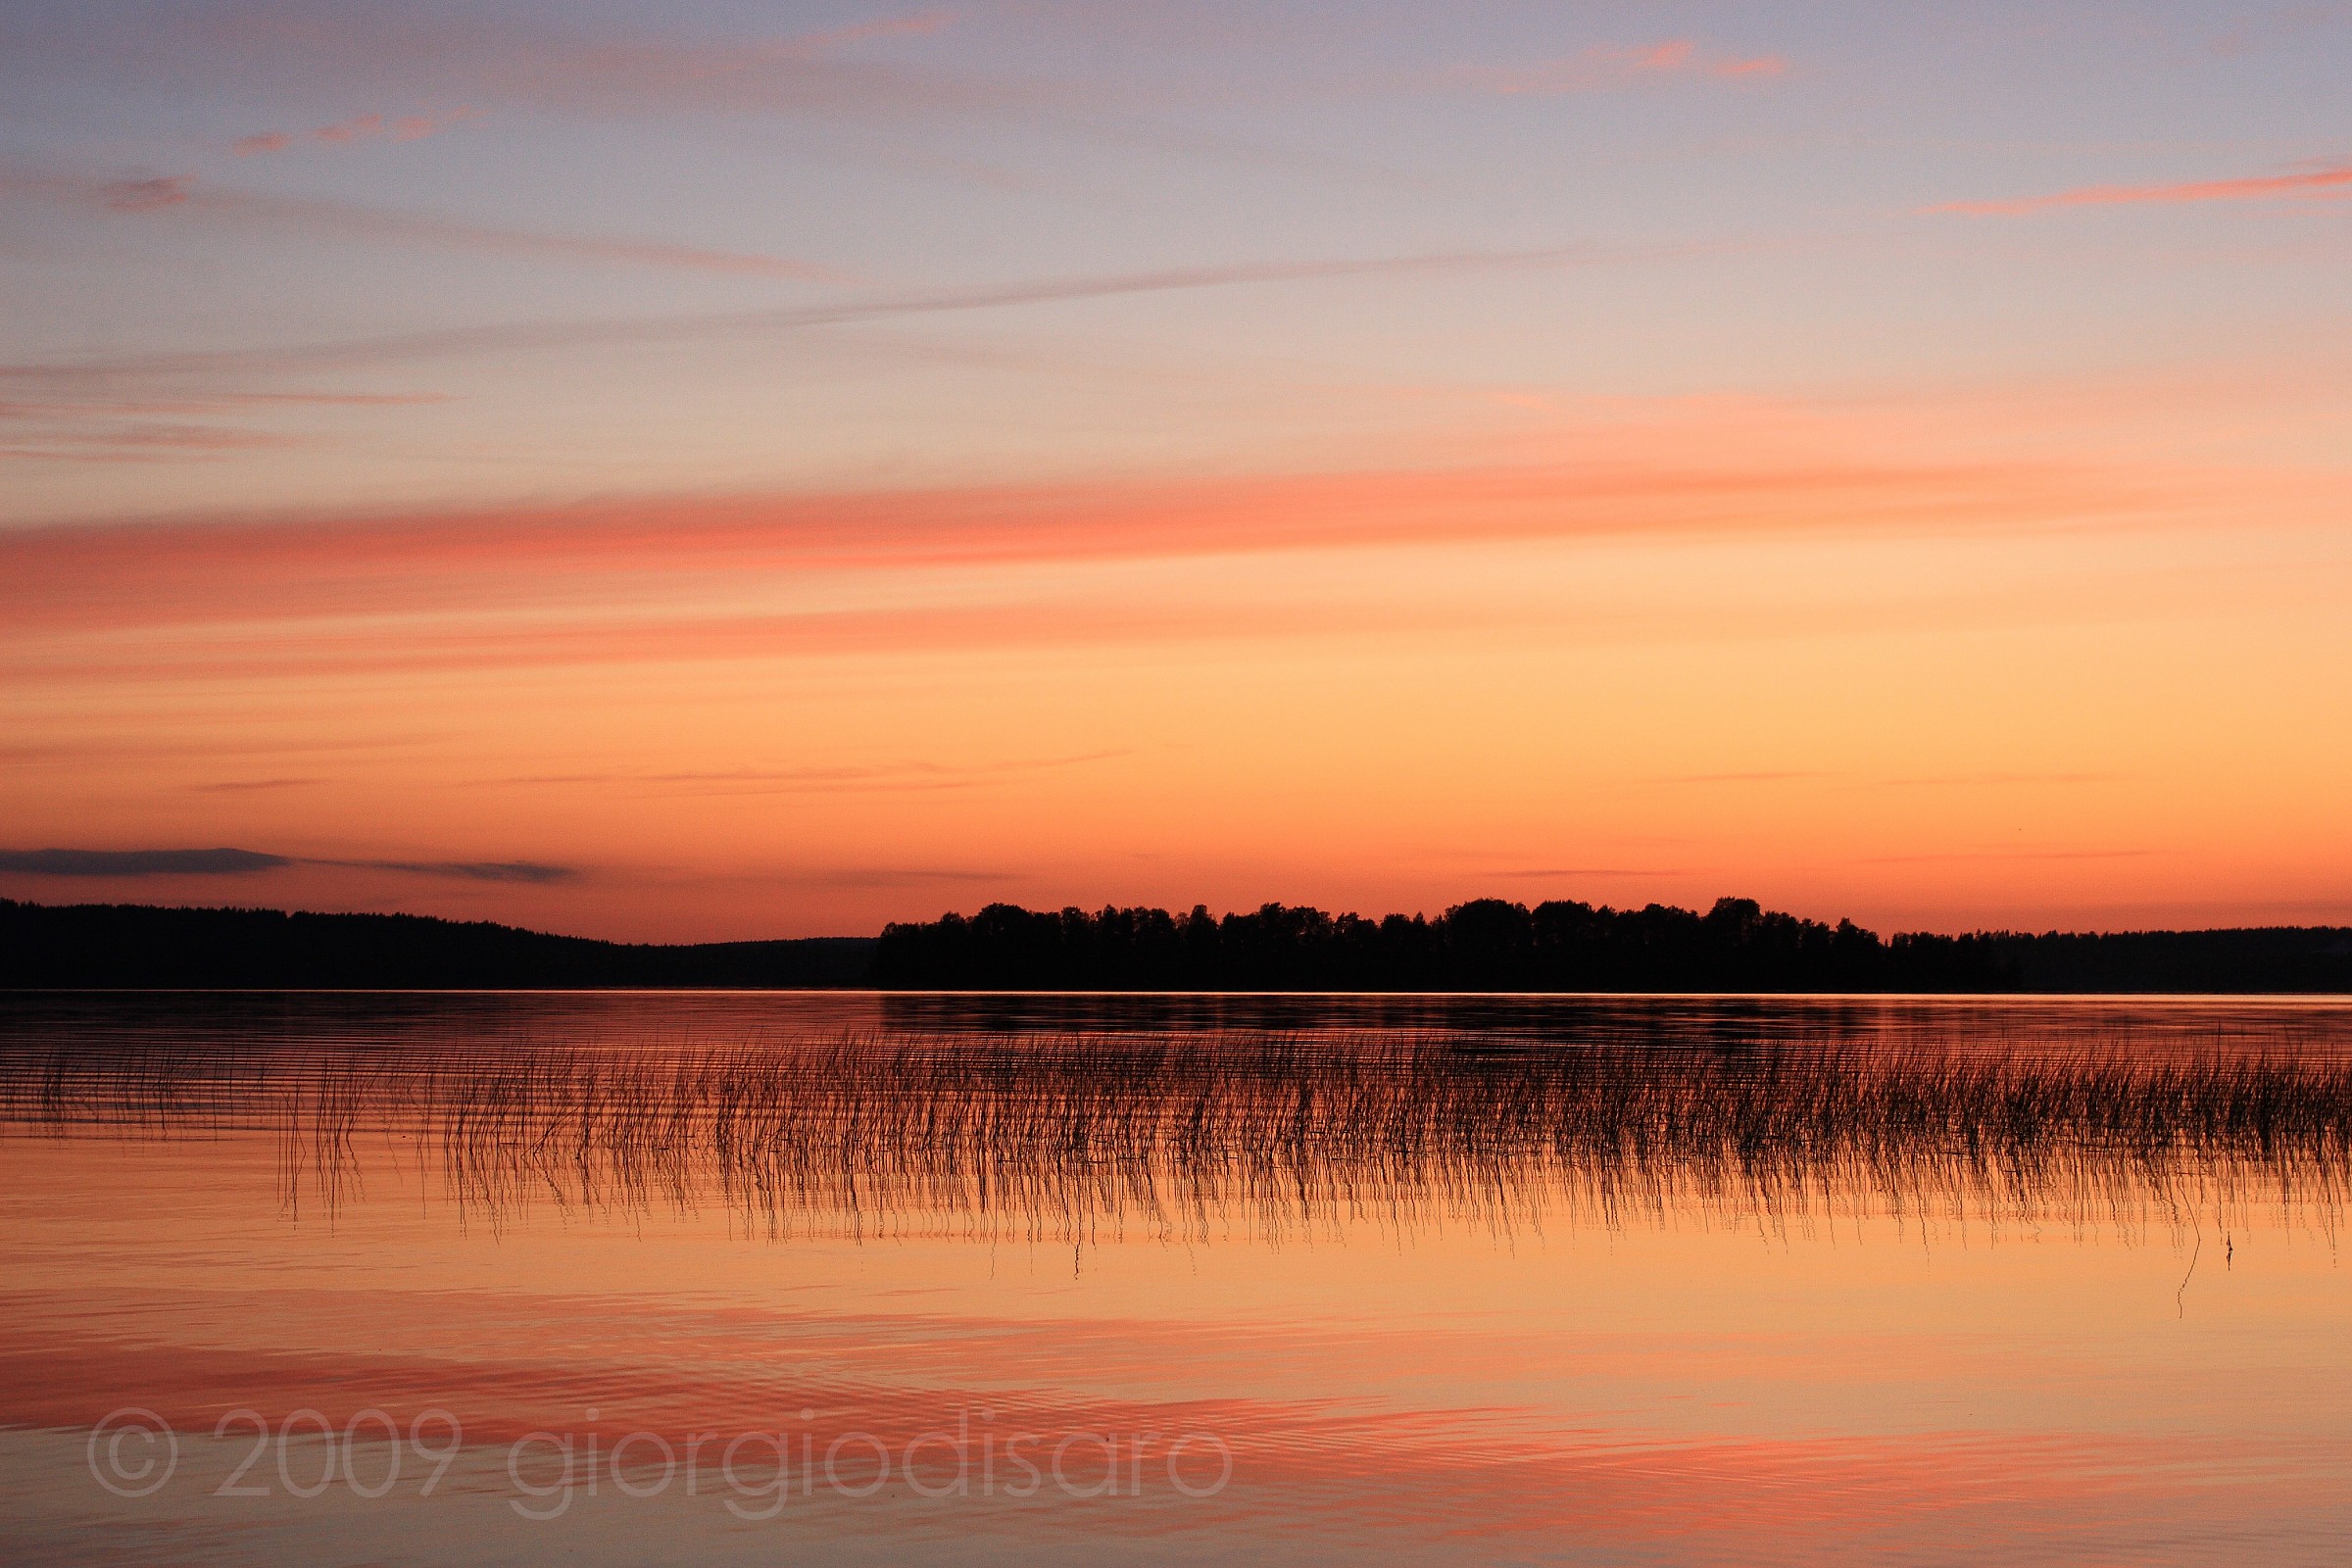 tramonto sul lago...